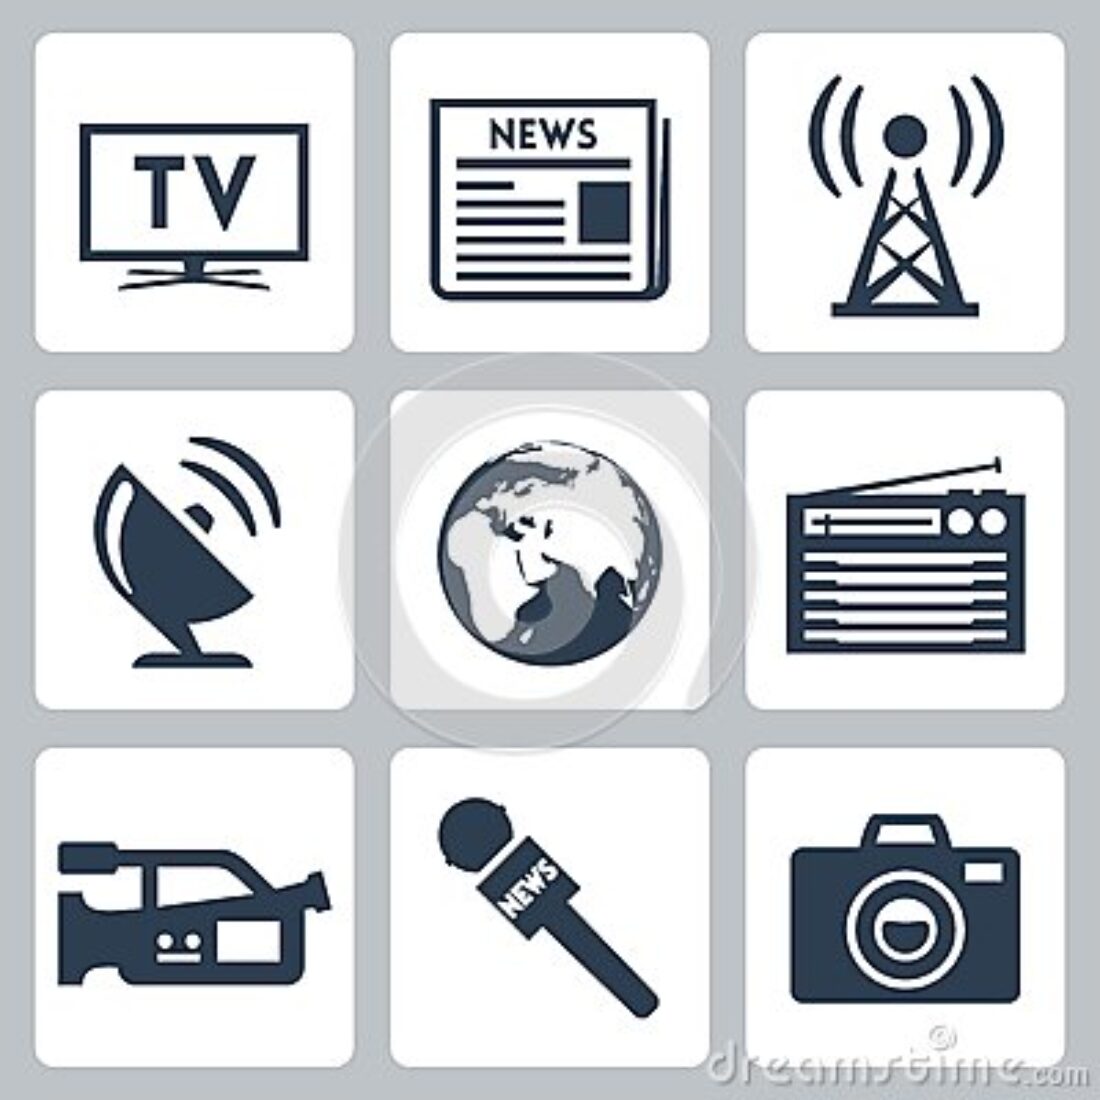 21-f Gandia: Curso de formación básica en Comunicación y Relaciones con los medios